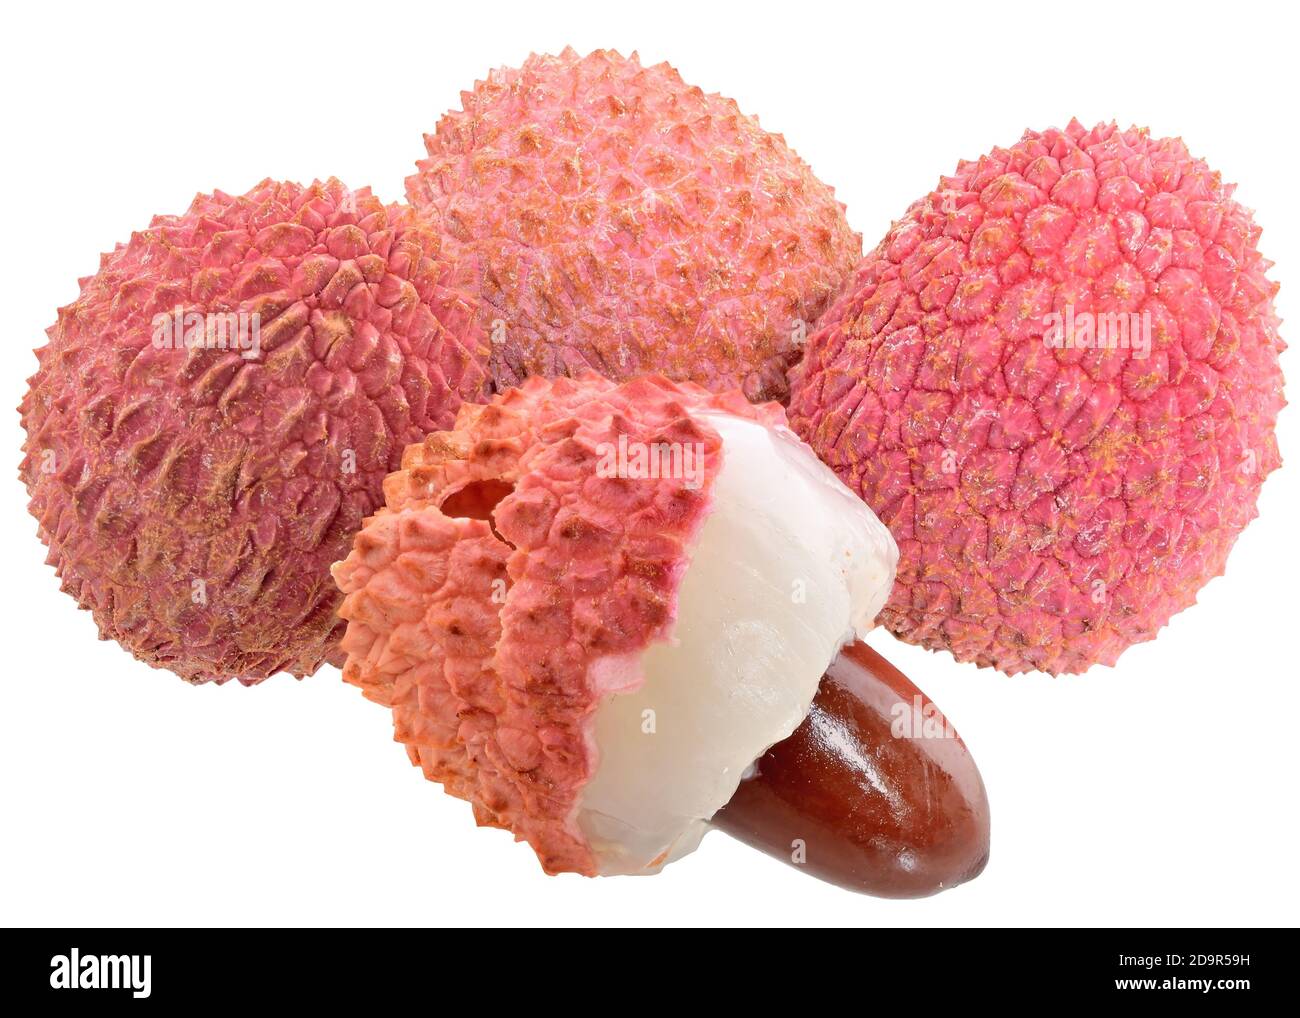 Fresh lychee exotic fruit isolated on a white background. Stock Photo